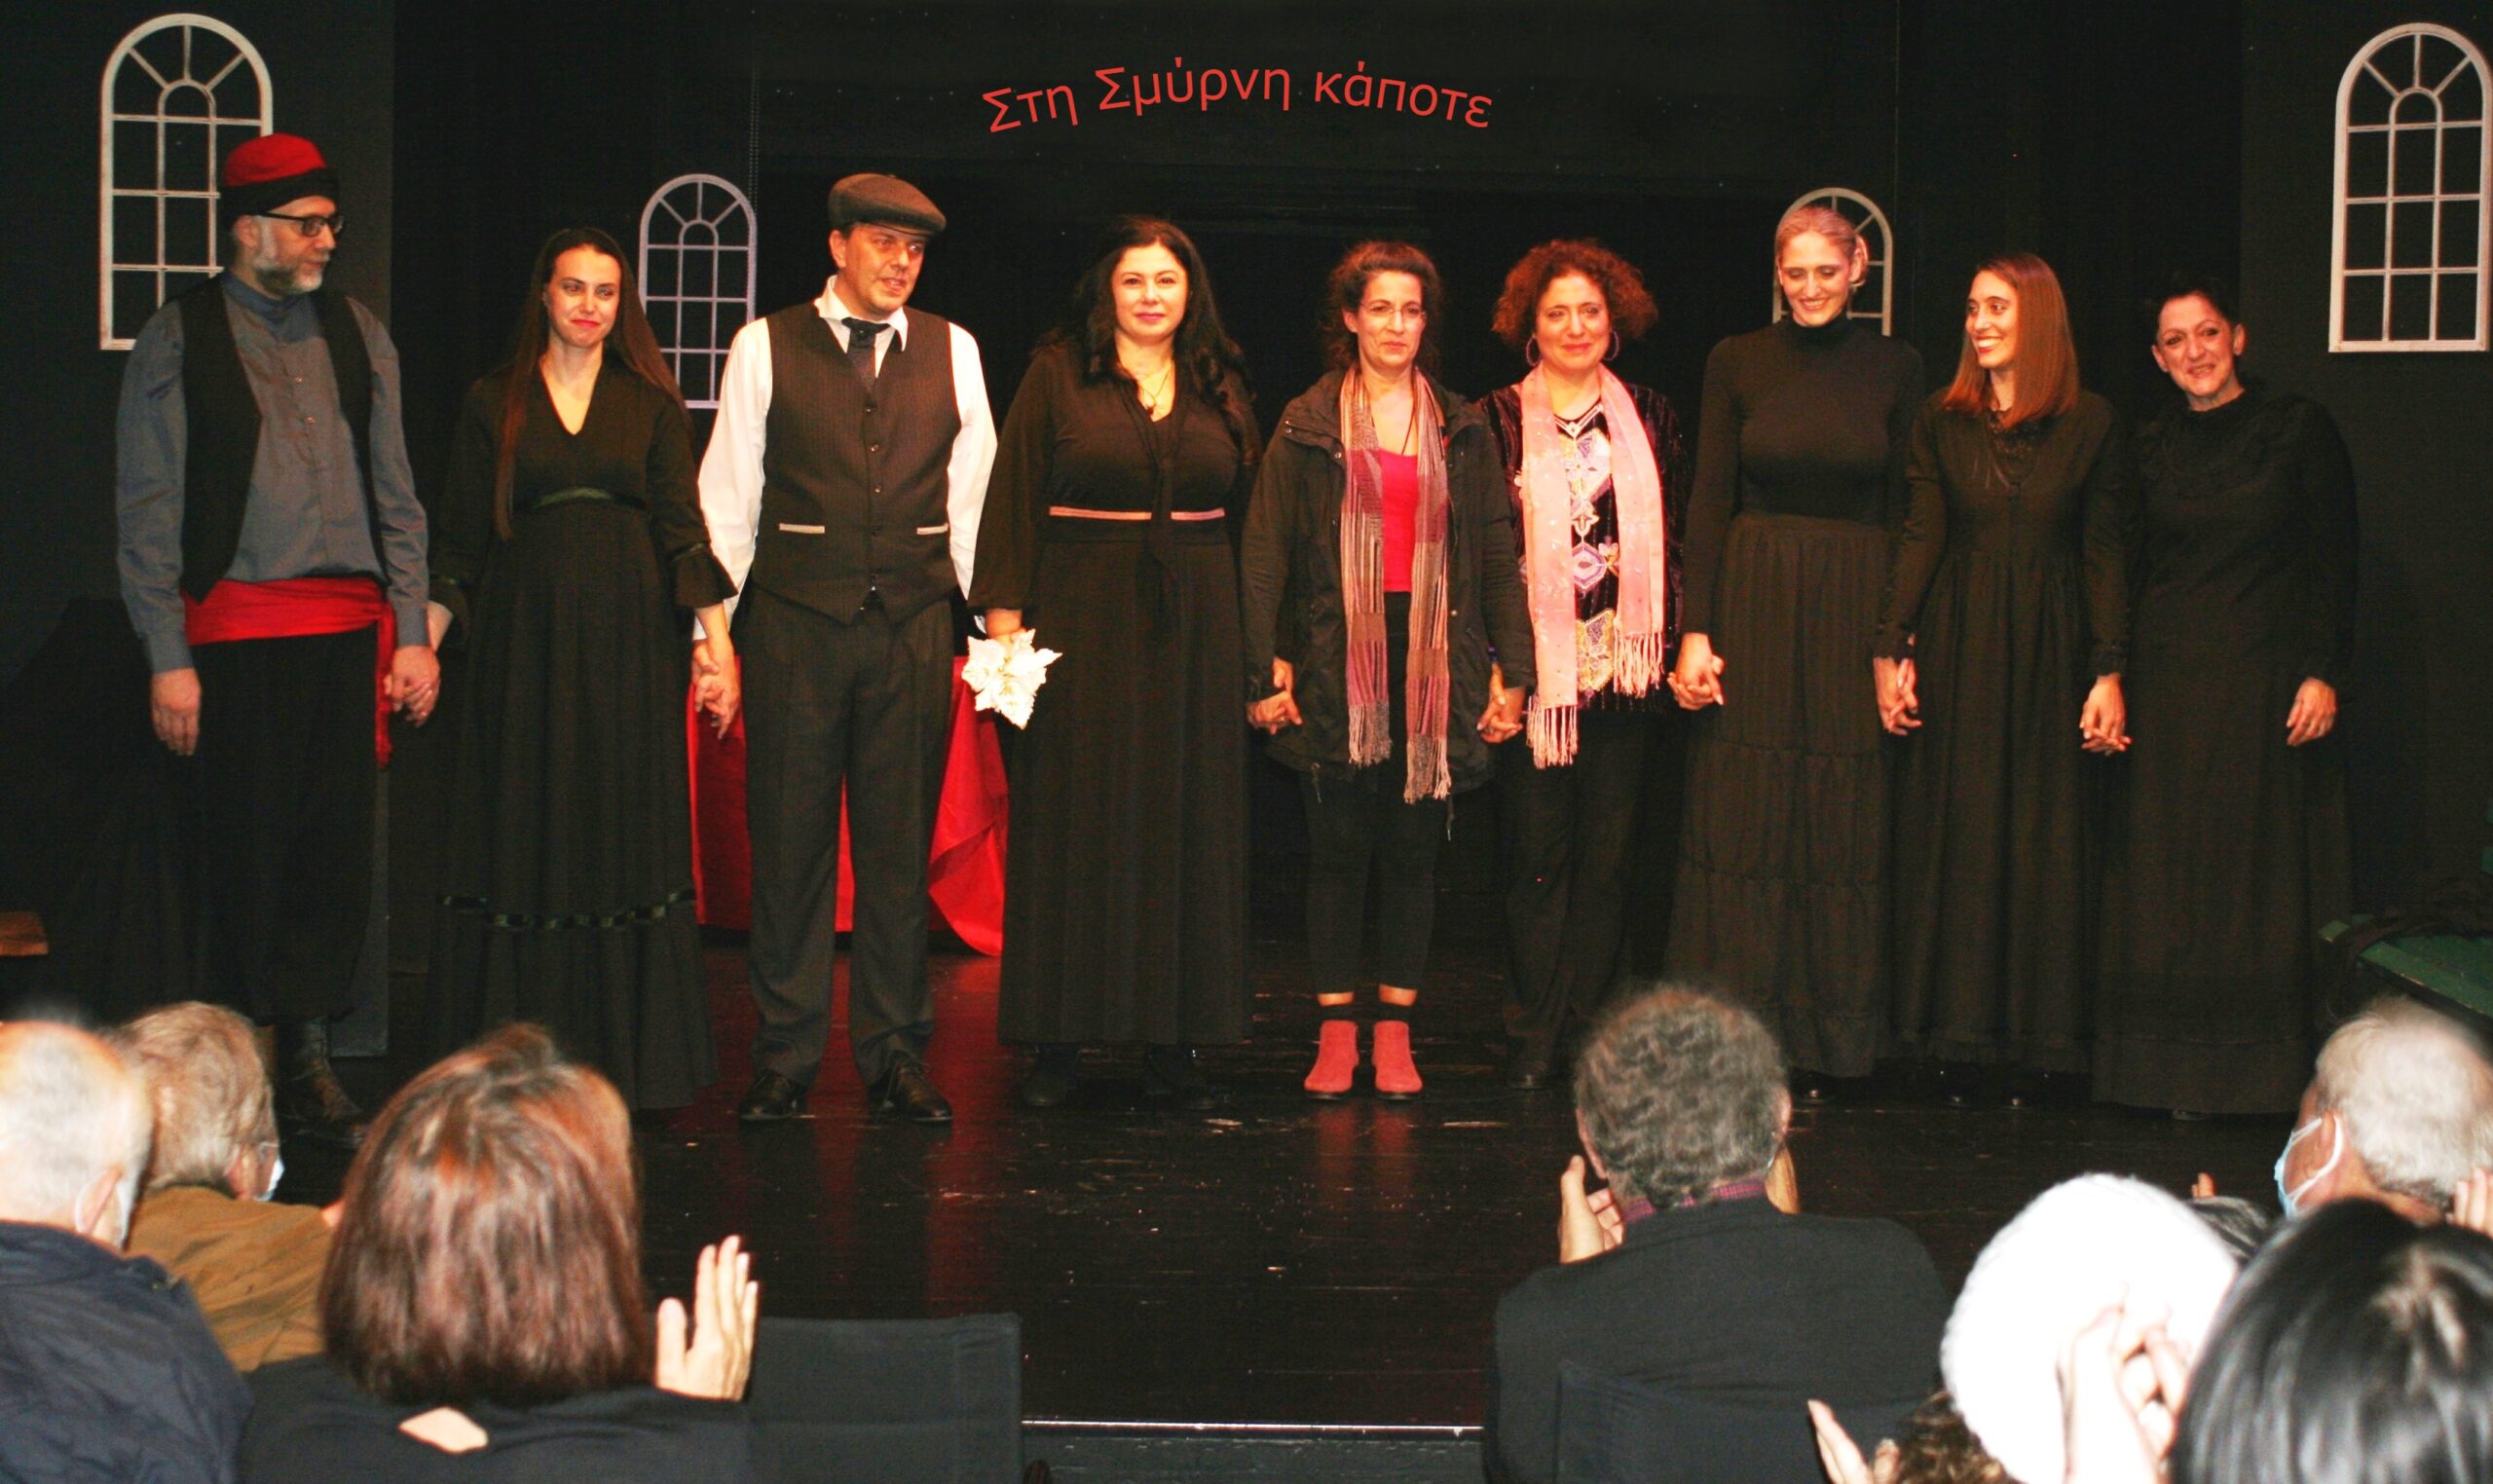 Πρεμιέρα : Στη Σμύρνη κάποτε του Θανάση Σάλτα σε σκηνοθεσία Ιωάννα Μαστοράκη με τις καλύτερες κριτικές